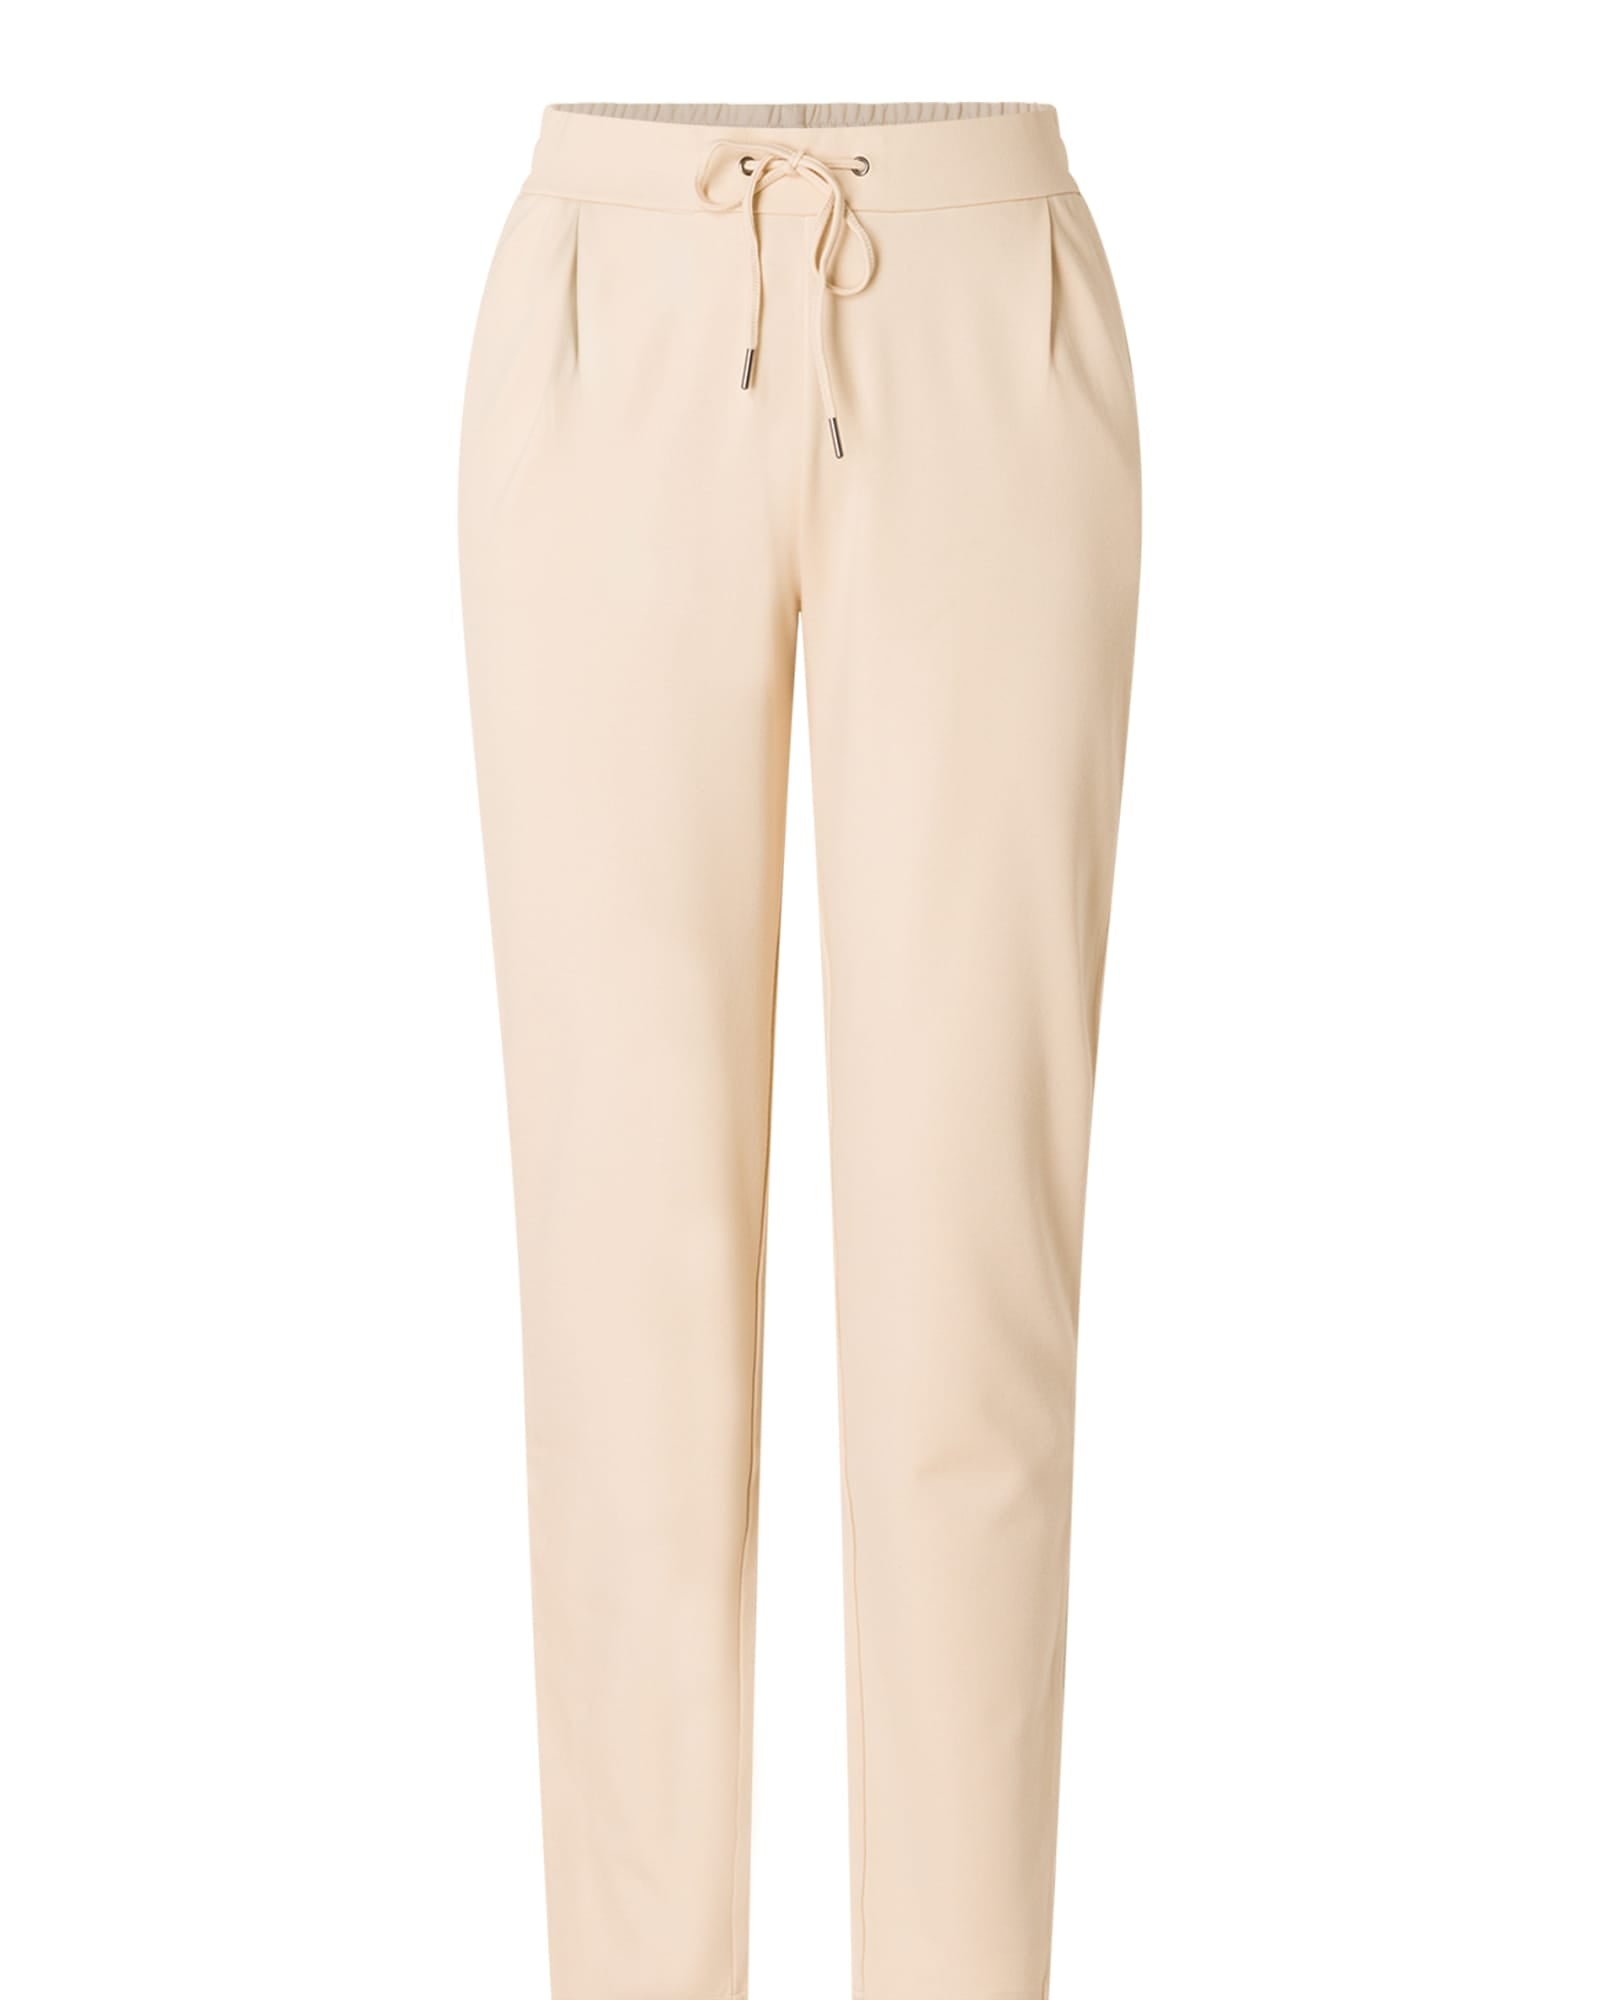 Women's Pants - Cargo Pants, Joggers, Linen Pants – The Vault Clothing Co.